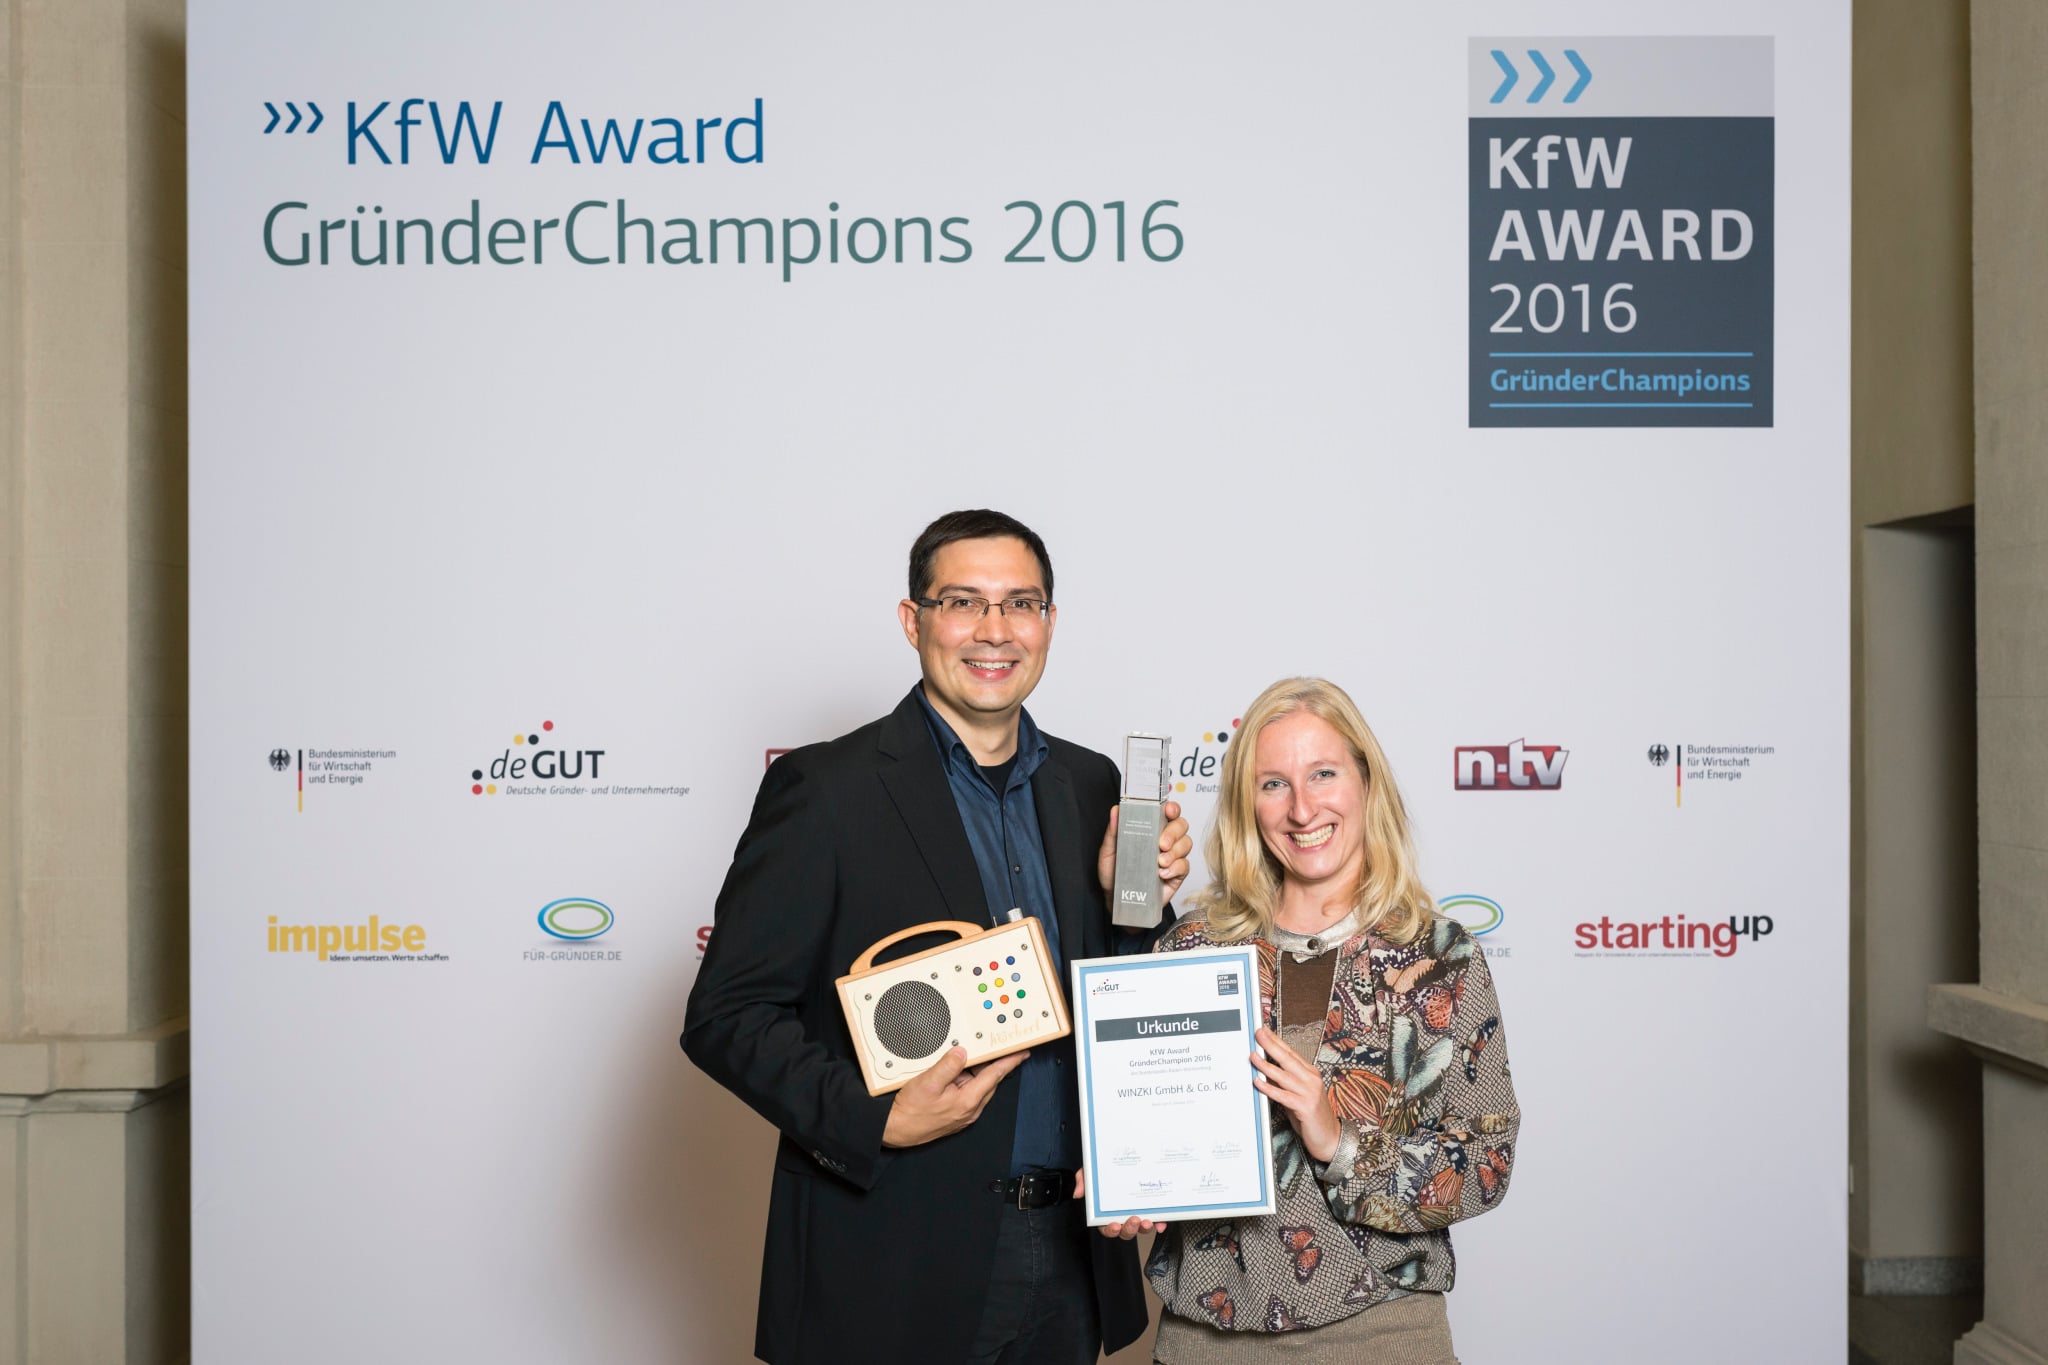 KFW Award 2016